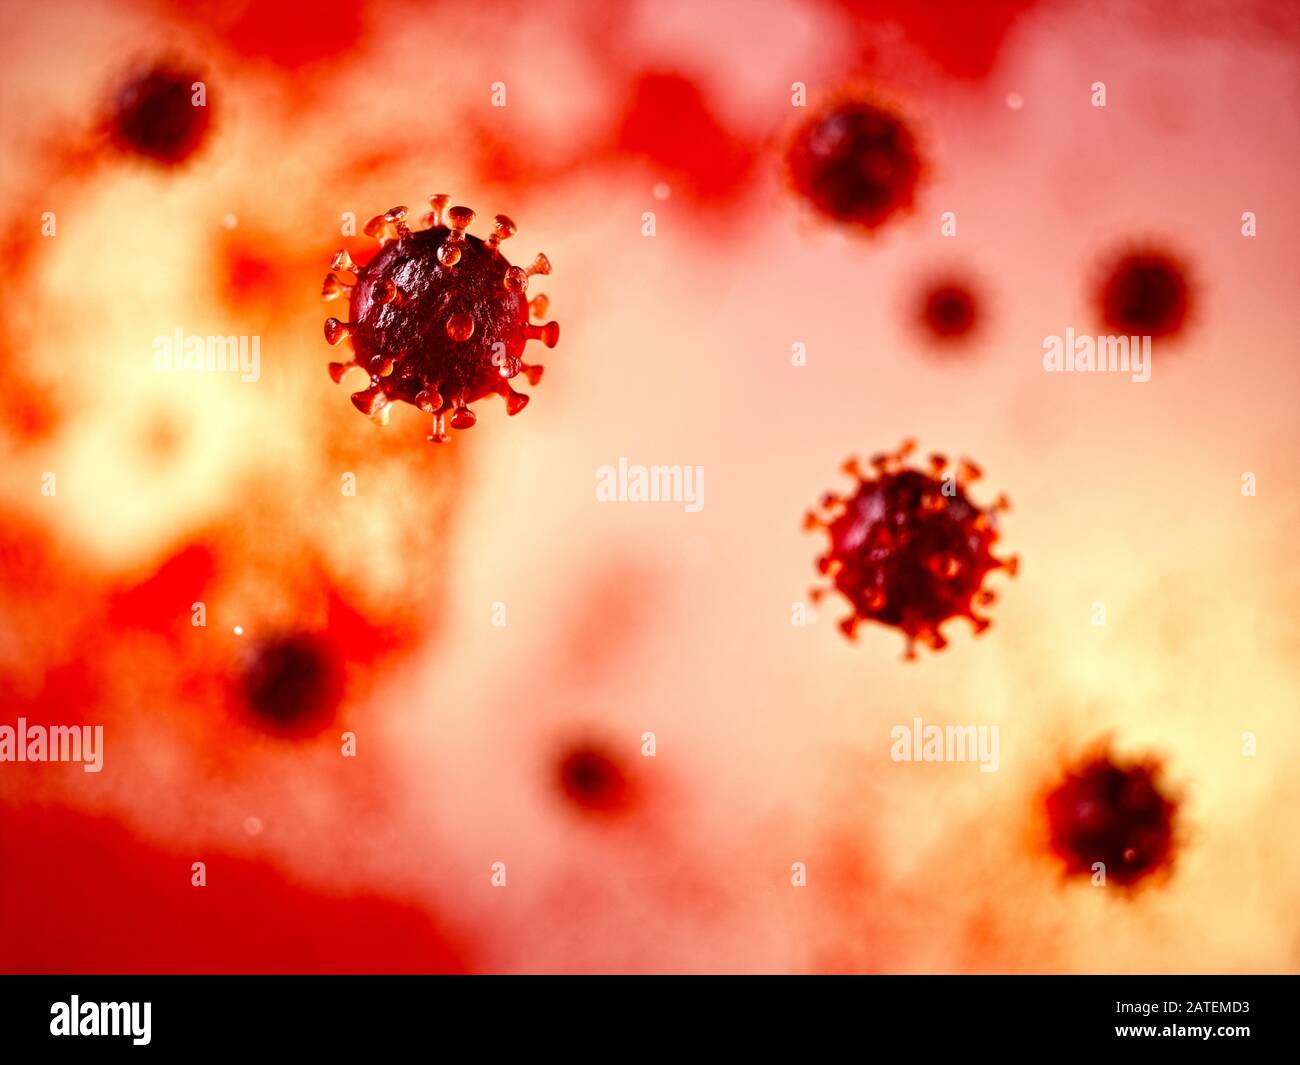 Coronavirus. Corona virus bacteria flu 3d rendering illustration Stock Photo